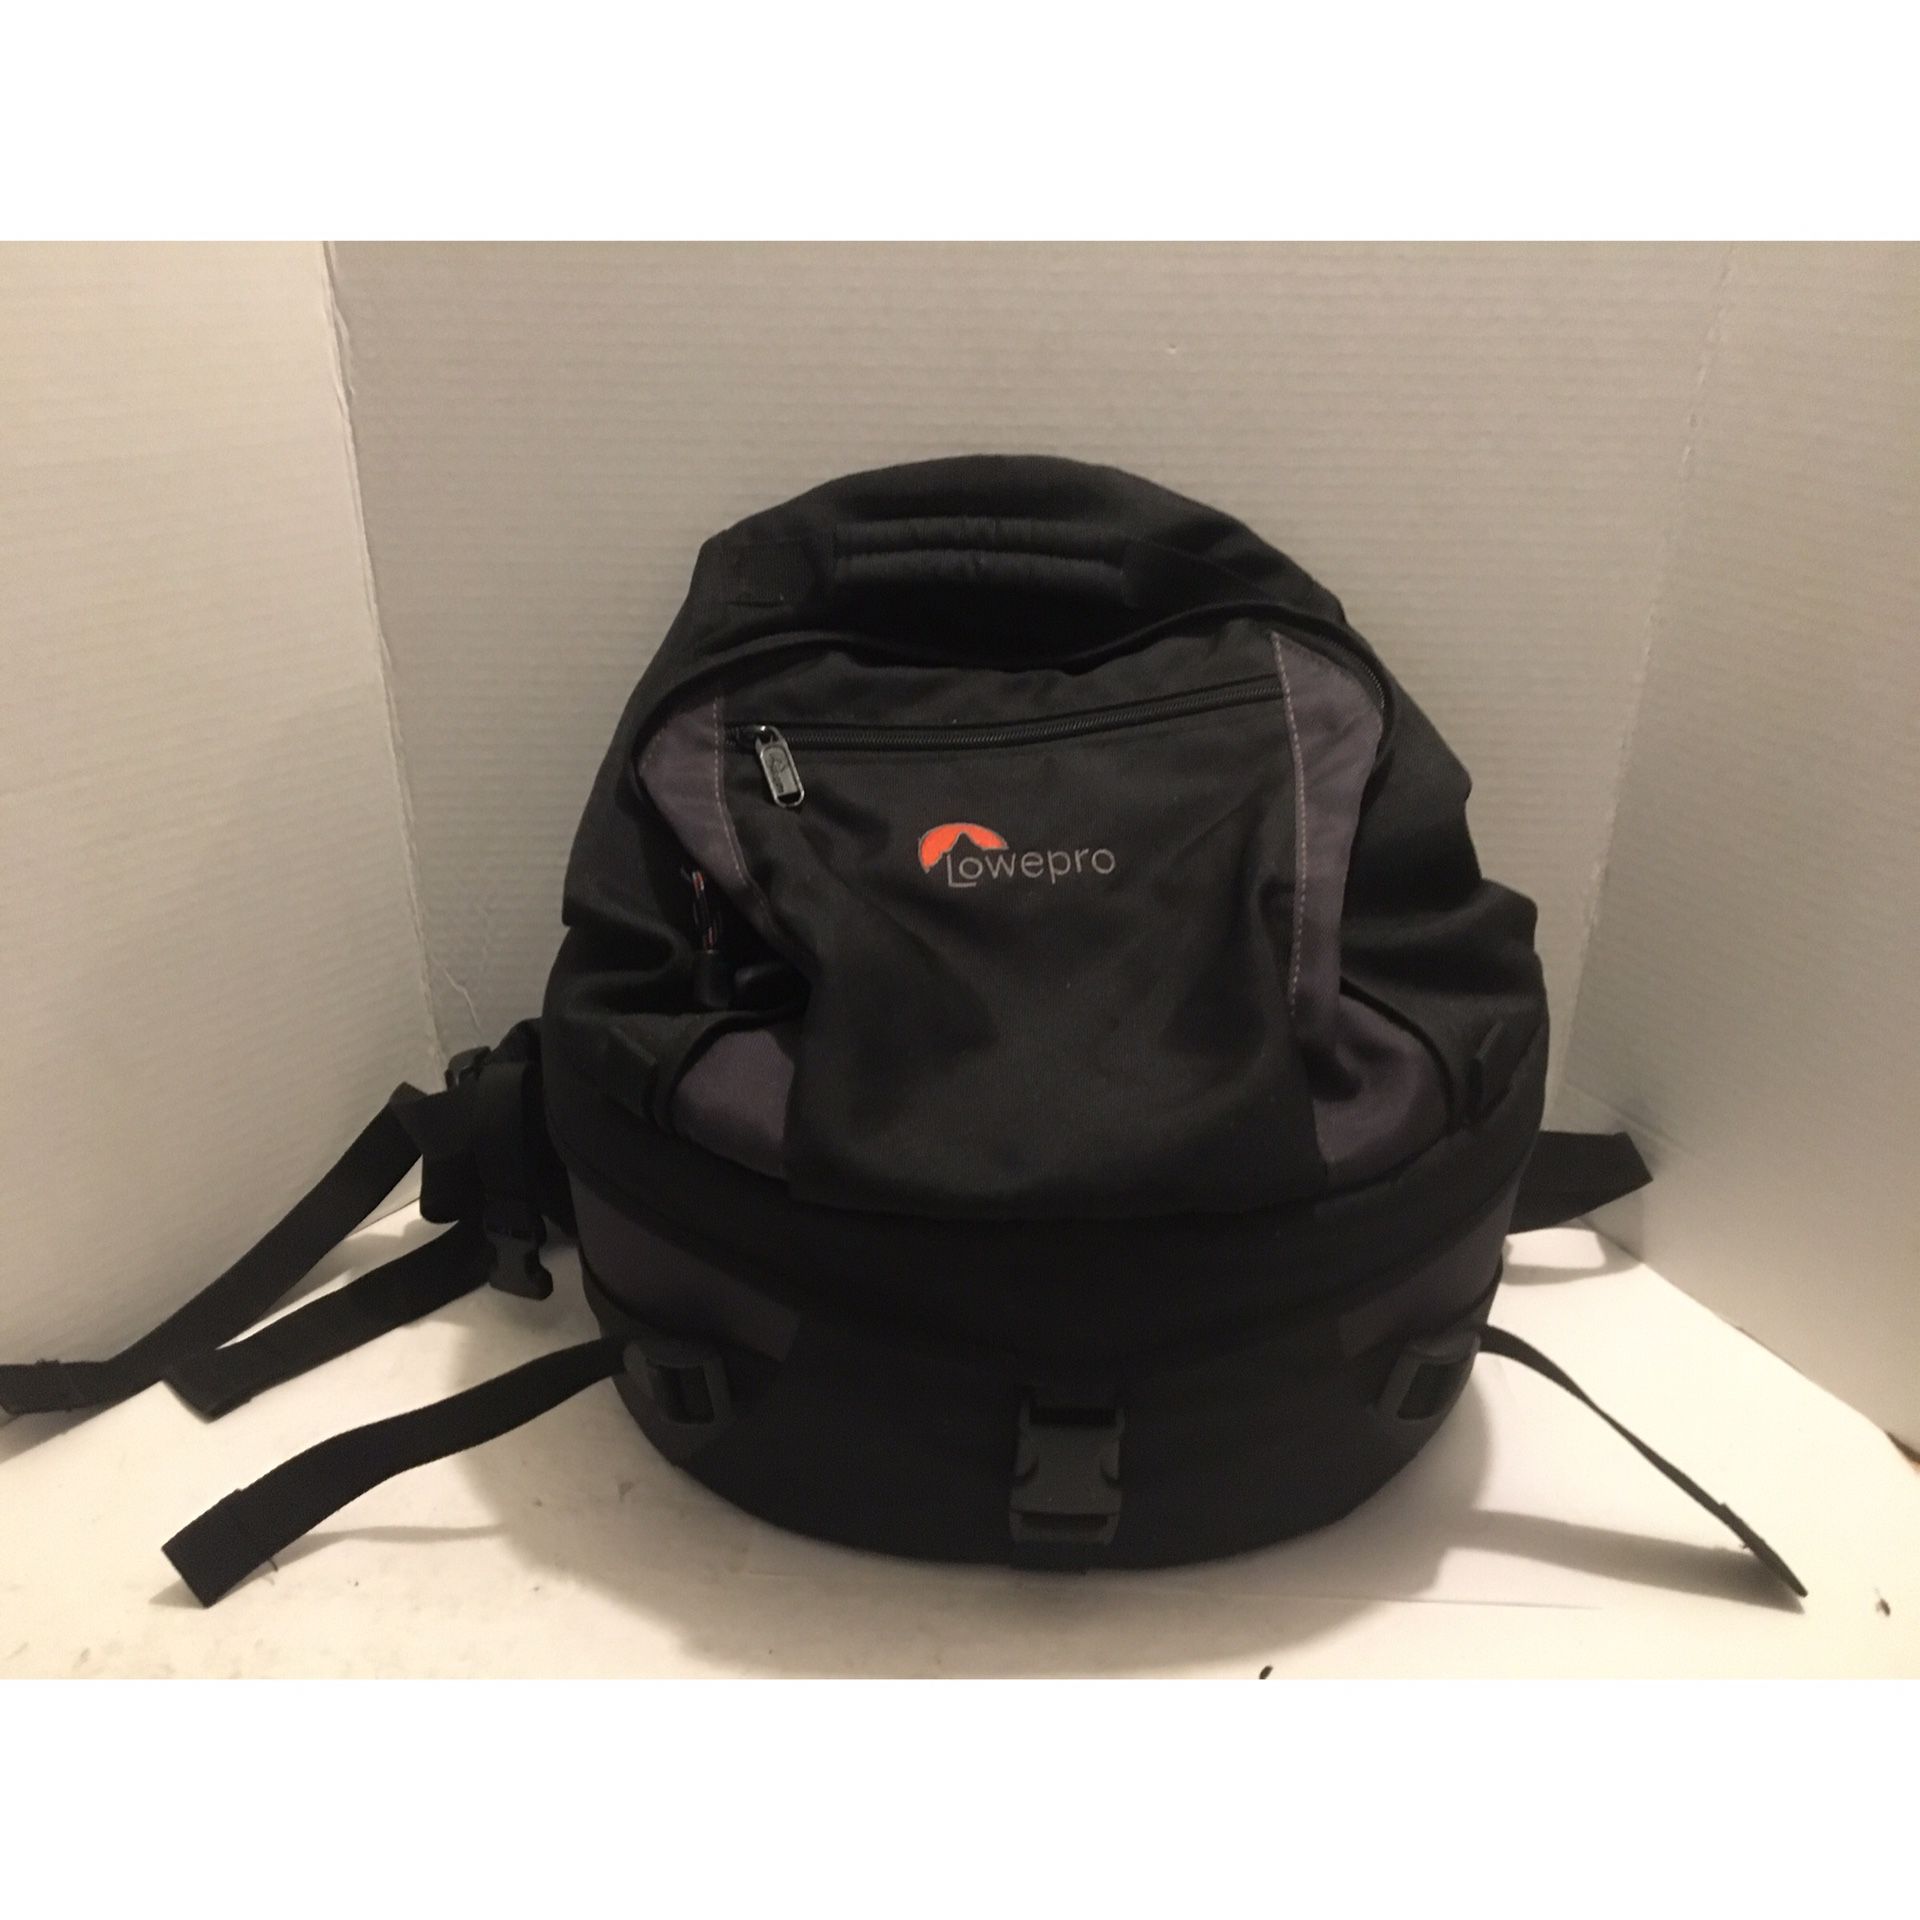 Lowepro DSLR Camera Bag Backpack 